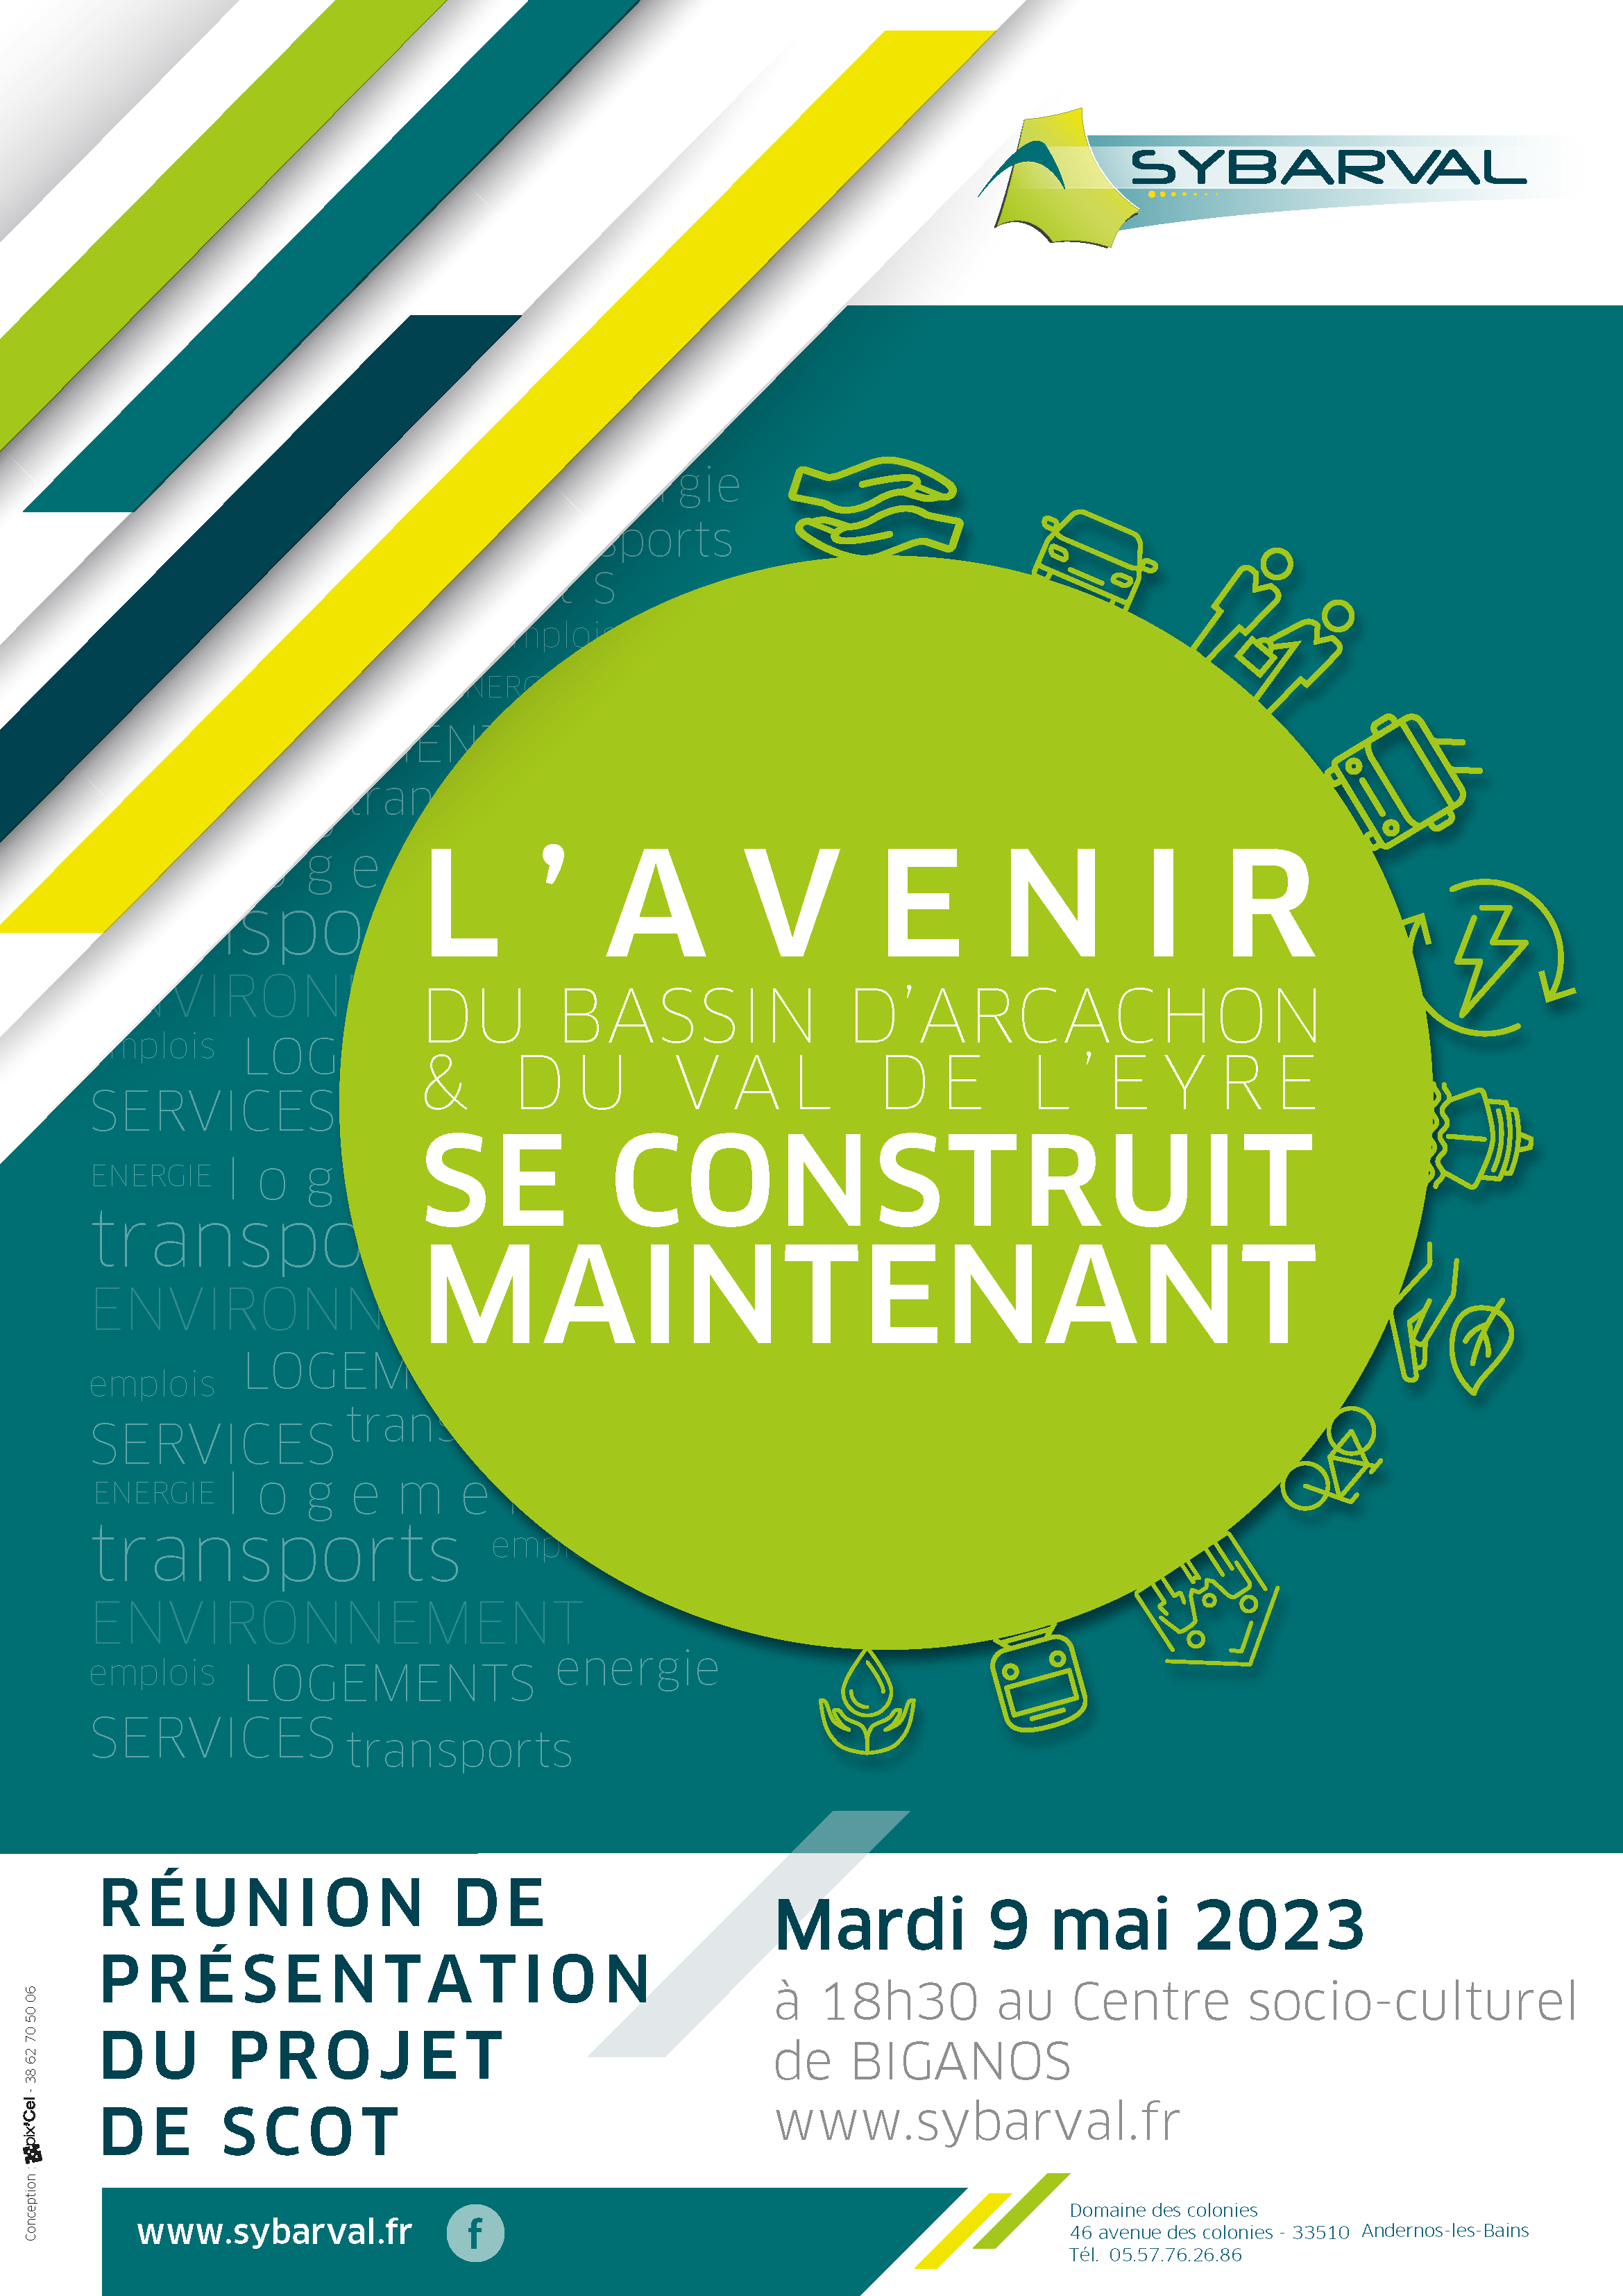 SYBARVAL Réunion publique de présentation du projet du SCOT le mardi 9 mai 2023 à 18h30 au Centre socio-culturel de Biganos - L'avenir du Bassin d'Arcachon et du Val de l'Eyre se construit maintenant